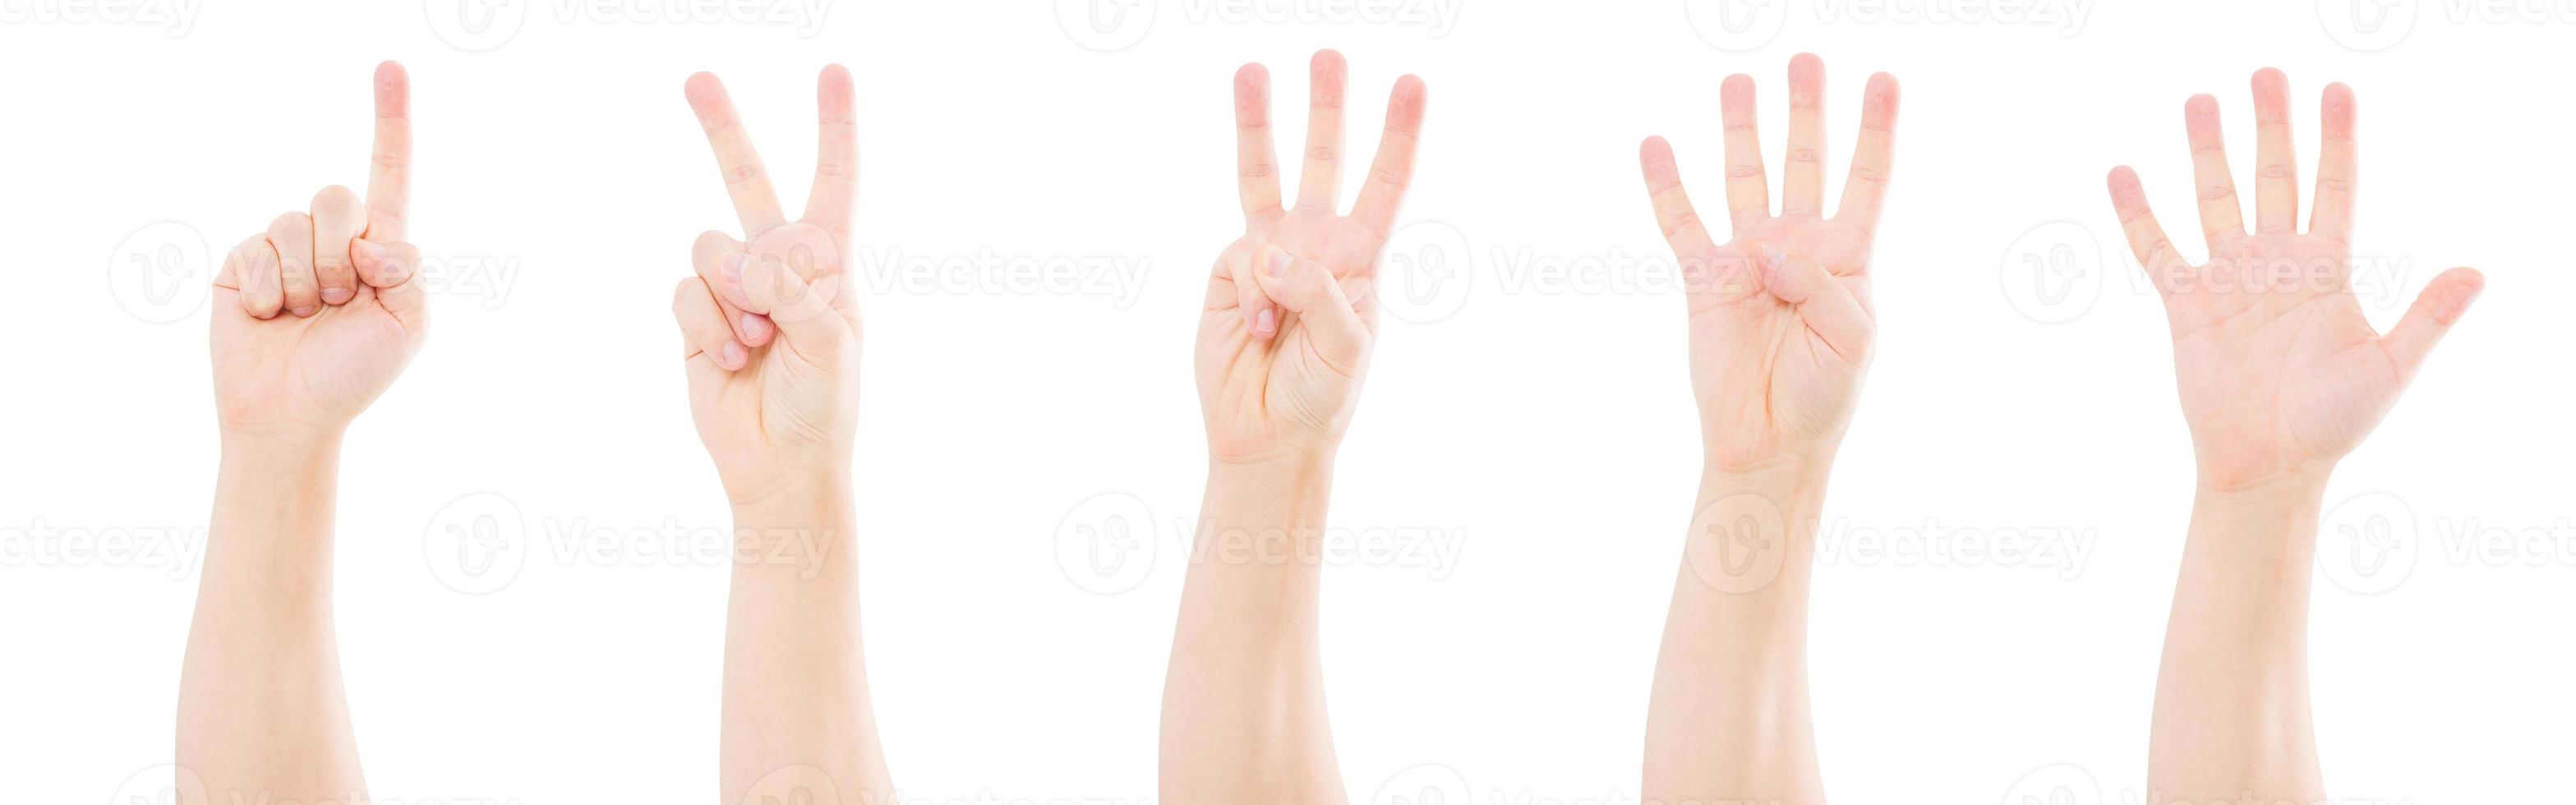 männliche Hände zählen von eins bis fünf isoliert auf weißem Hintergrund, Textfreiraum, Mock-up foto